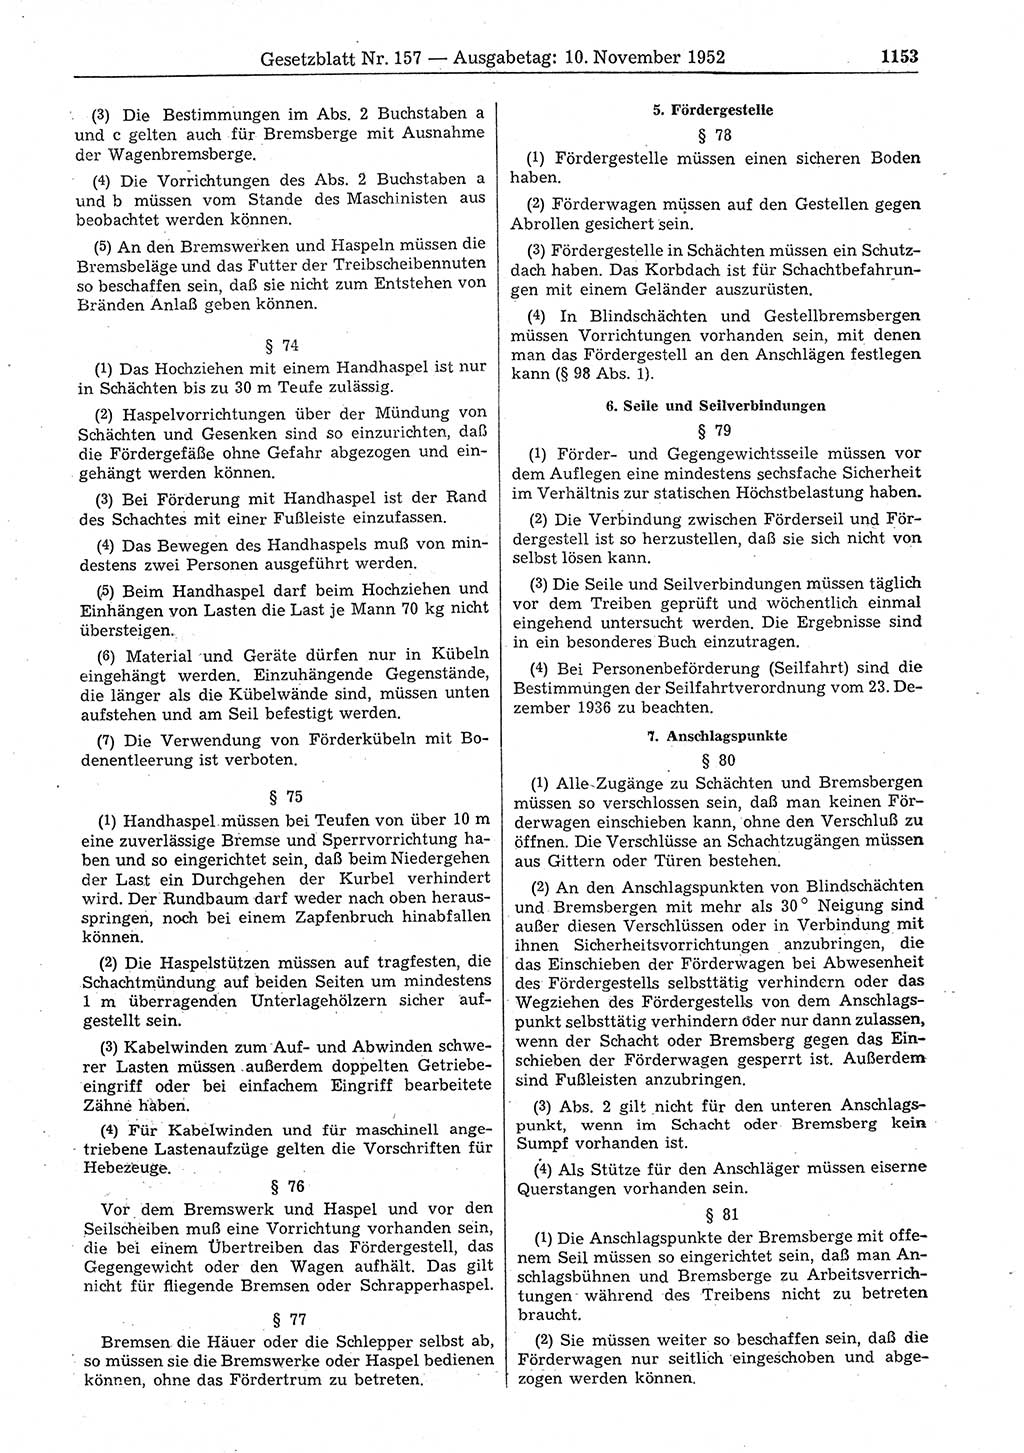 Gesetzblatt (GBl.) der Deutschen Demokratischen Republik (DDR) 1952, Seite 1153 (GBl. DDR 1952, S. 1153)